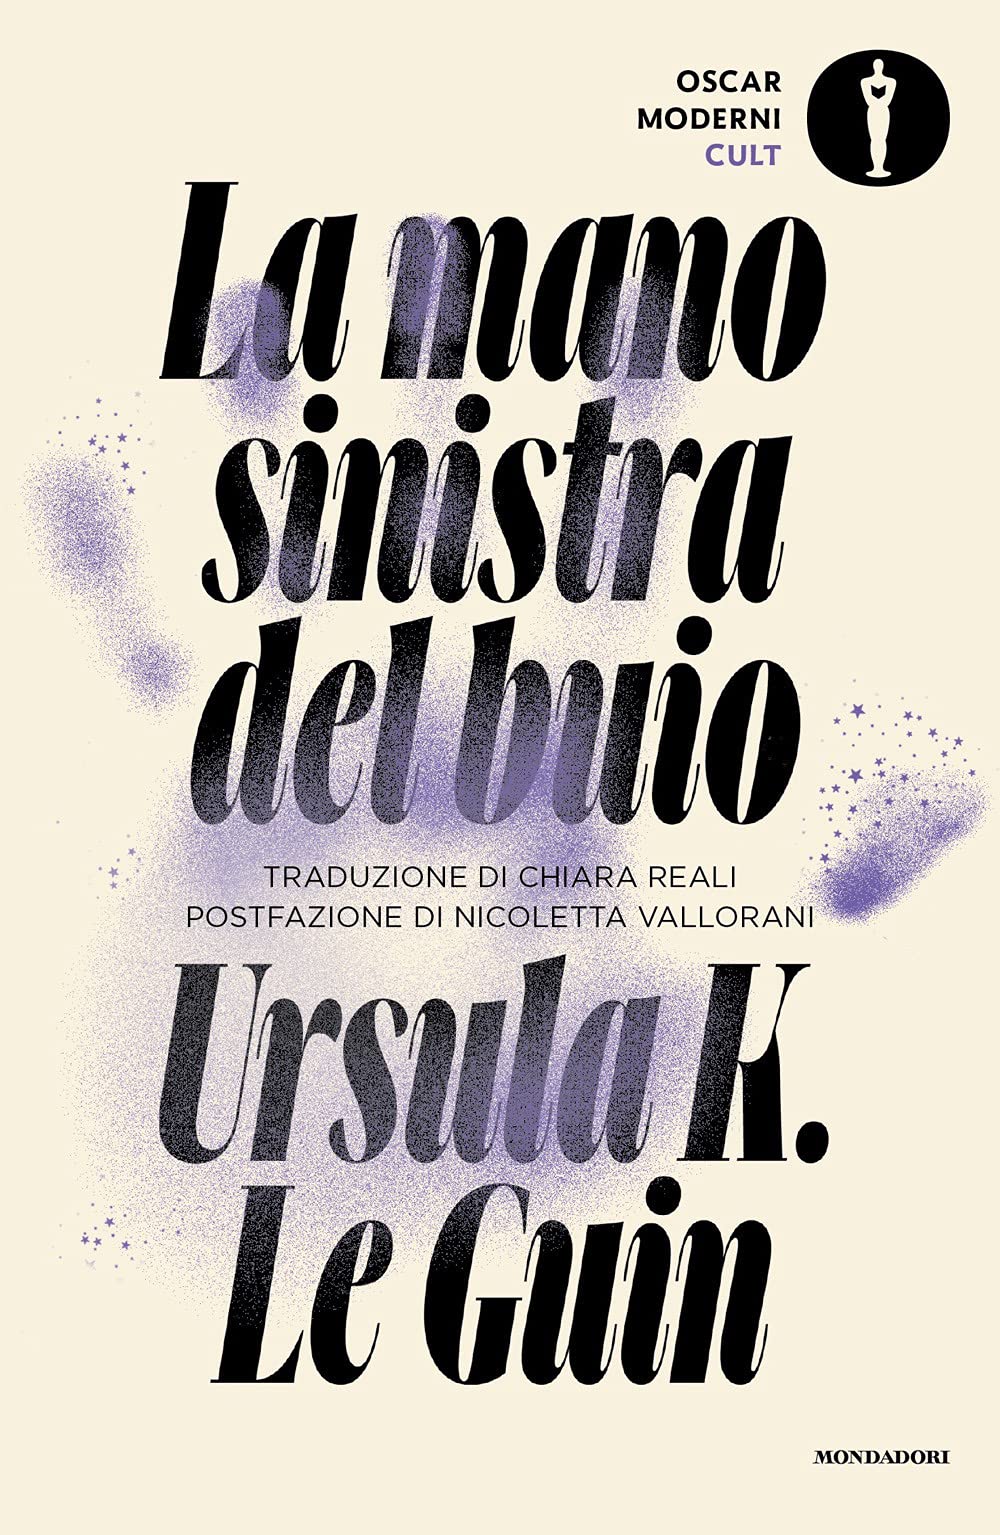 La mano sinistra del buio – Ursula K. Le Guin – cit.